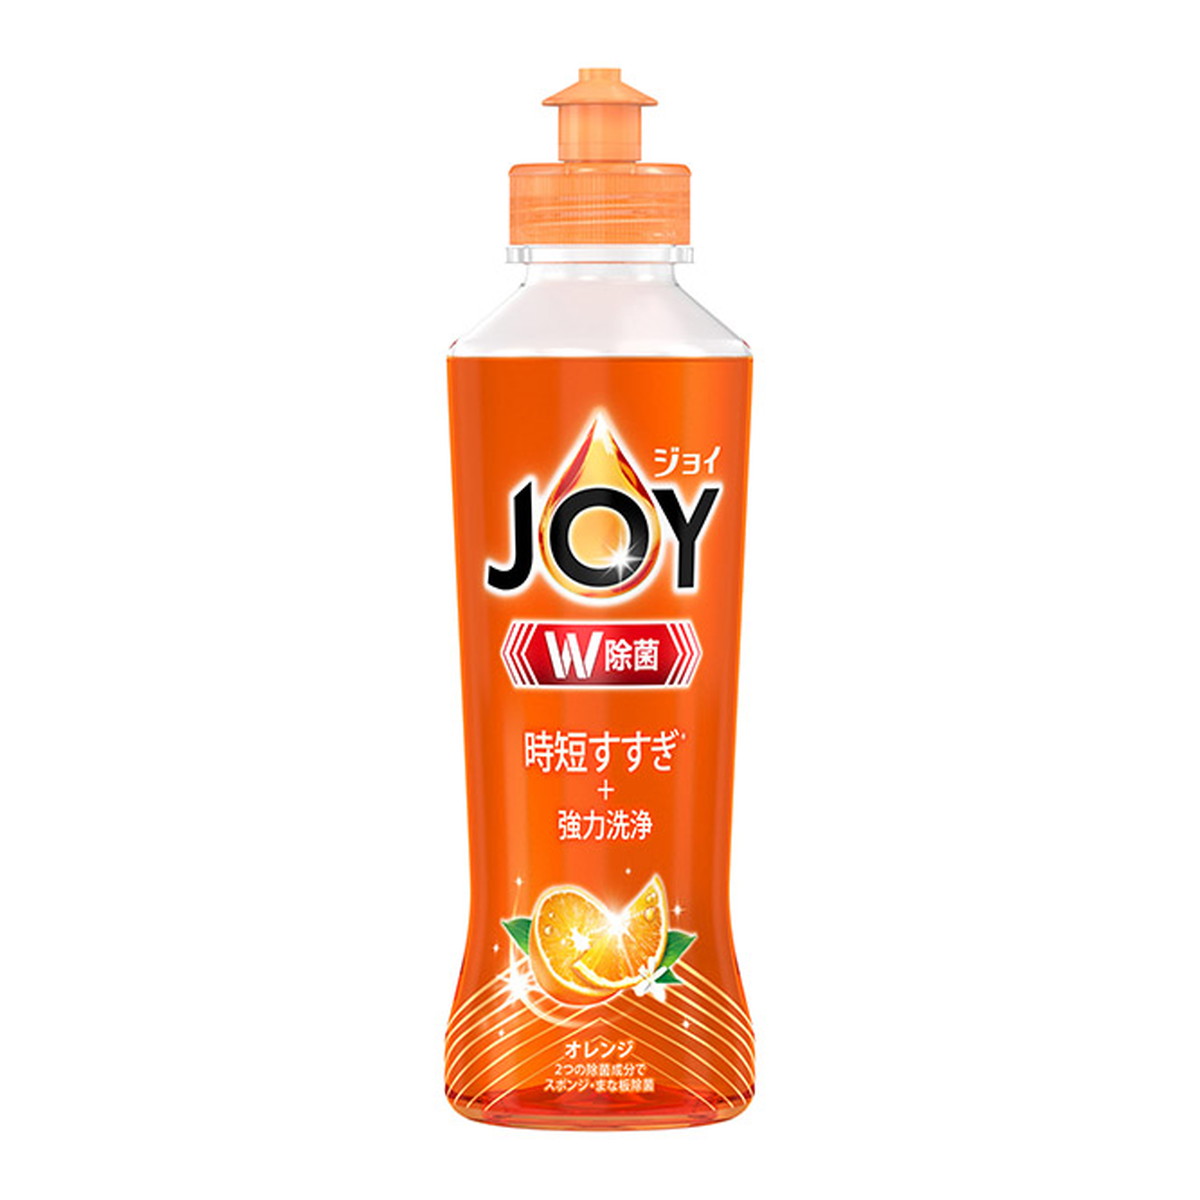 P&G 除菌ジョイコンパクト オレンジの香り本体 170ml ×24 ジョイ(P&G) 台所用洗剤の商品画像